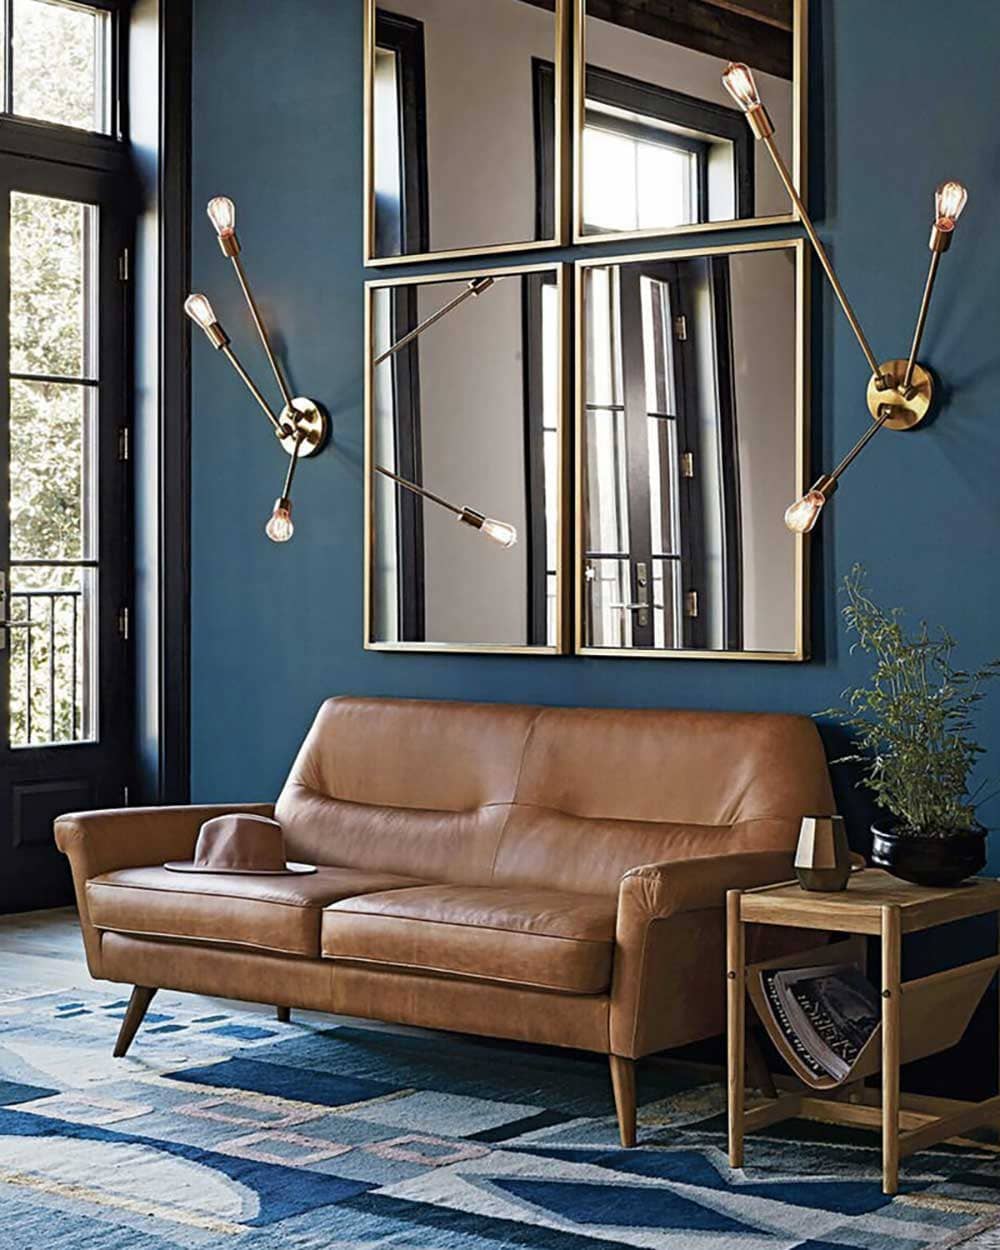 Canapé cuir style colonial dans salon lumineux avec miroir rectangle, lampes art déco et murs pétrole